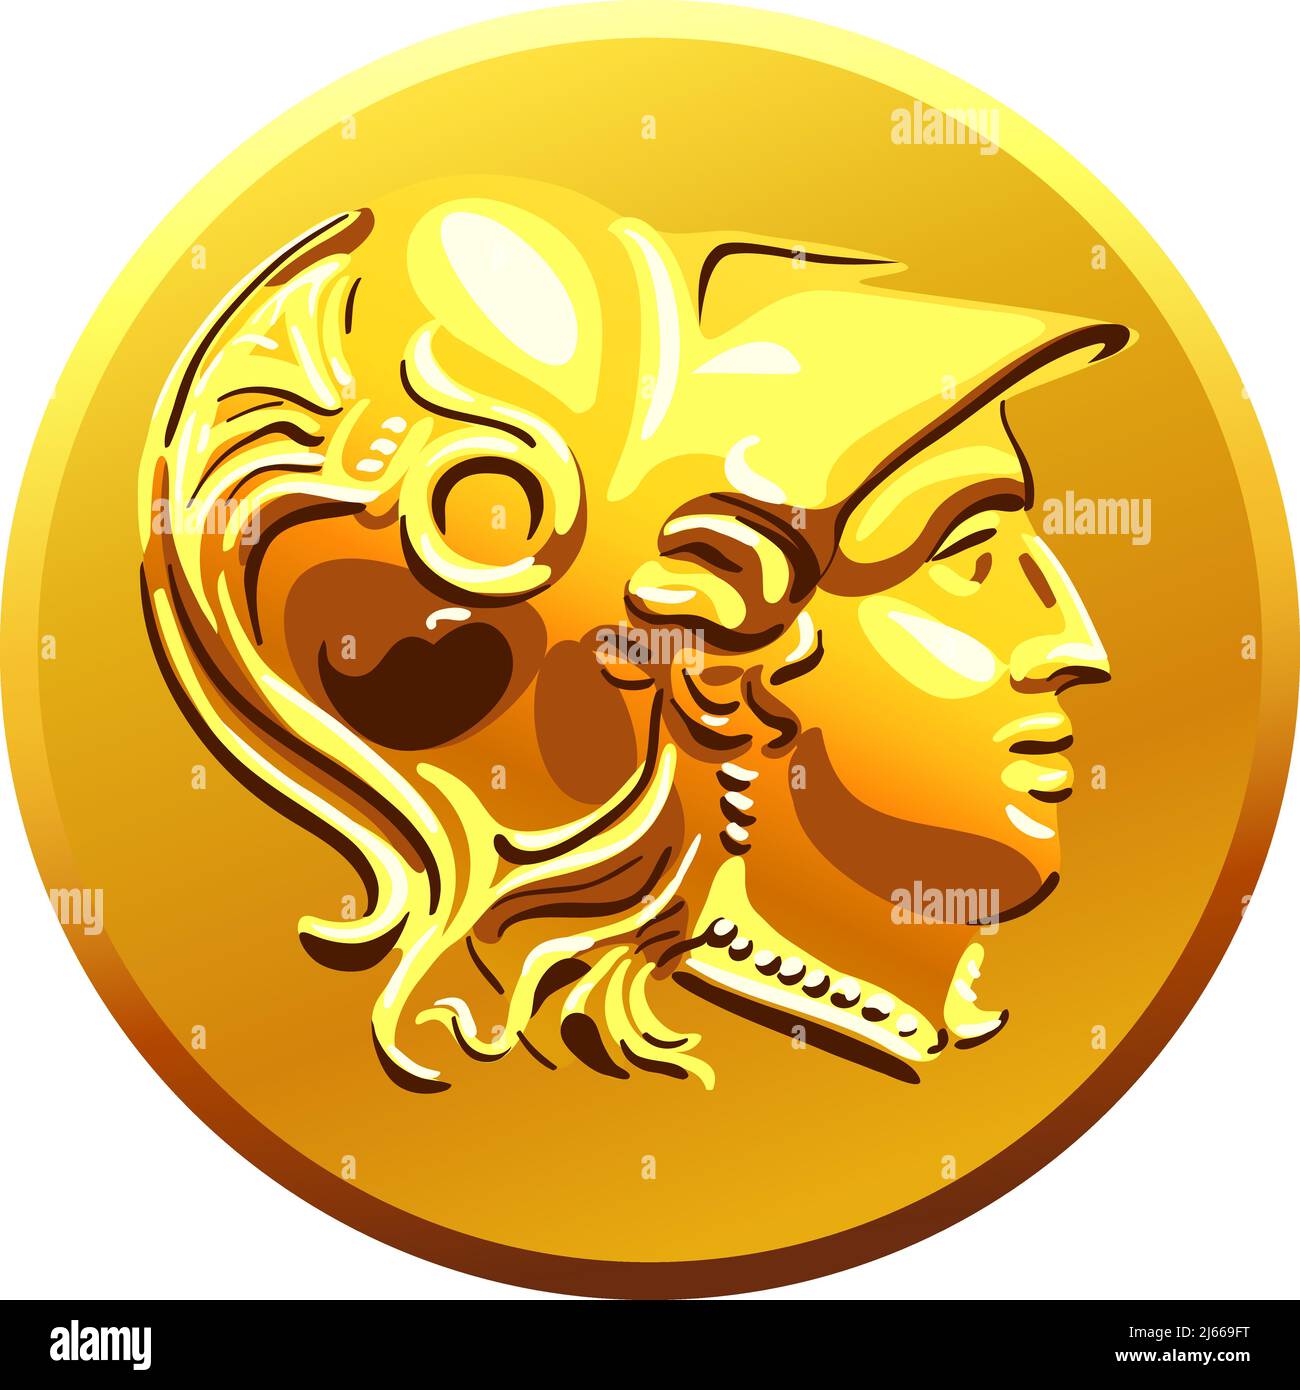 Griechische Geld Münze gold glänzenden alten mit dem Bild von Alexander von Makedonien im Helm Stock Vektor